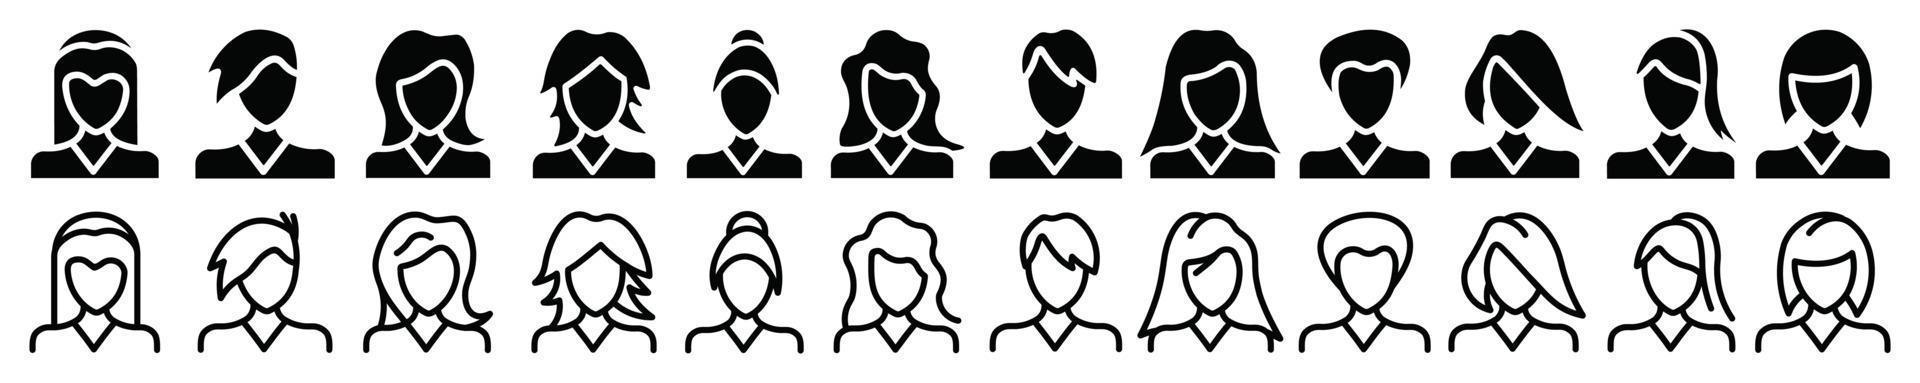 jeu d'icônes d'avatar de personnes, icône plate vectorielle en tant que femme vecteur